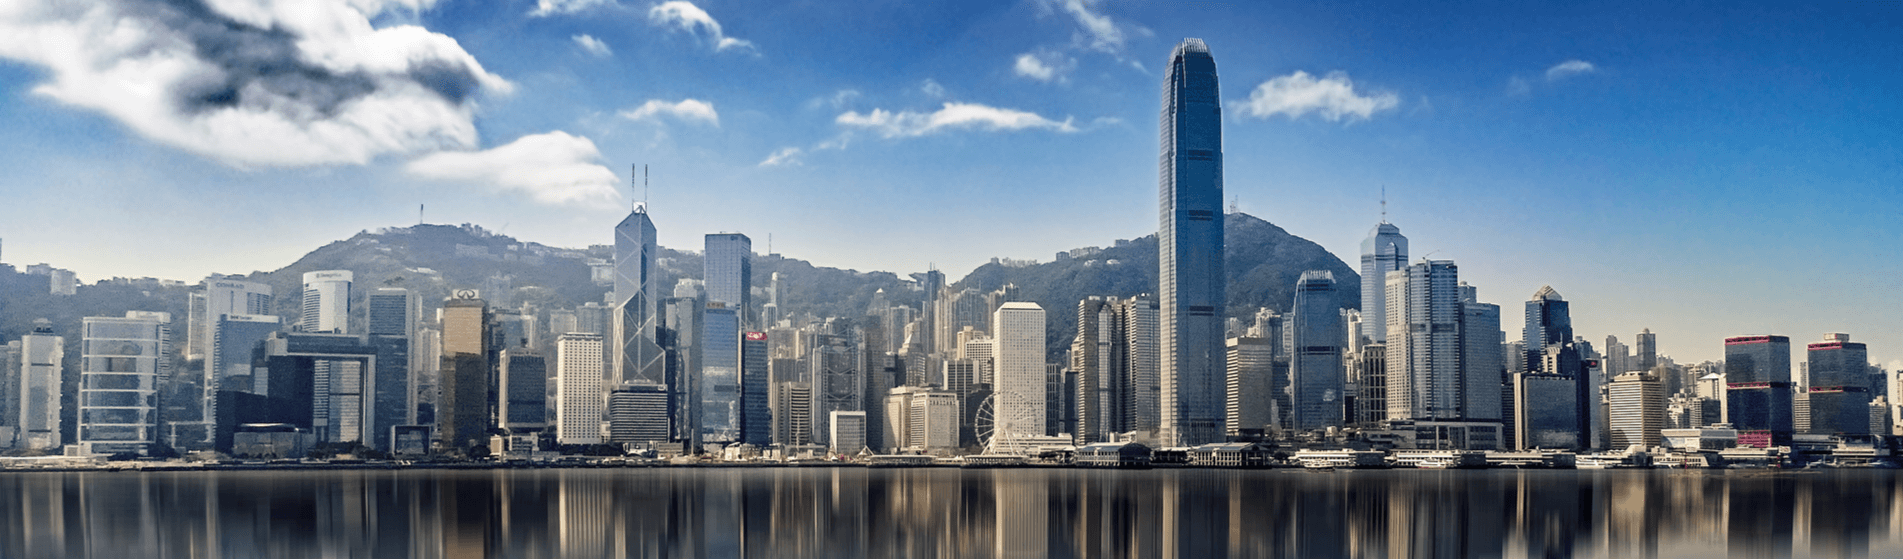 HSBC relocates top leadership to Hong Kong